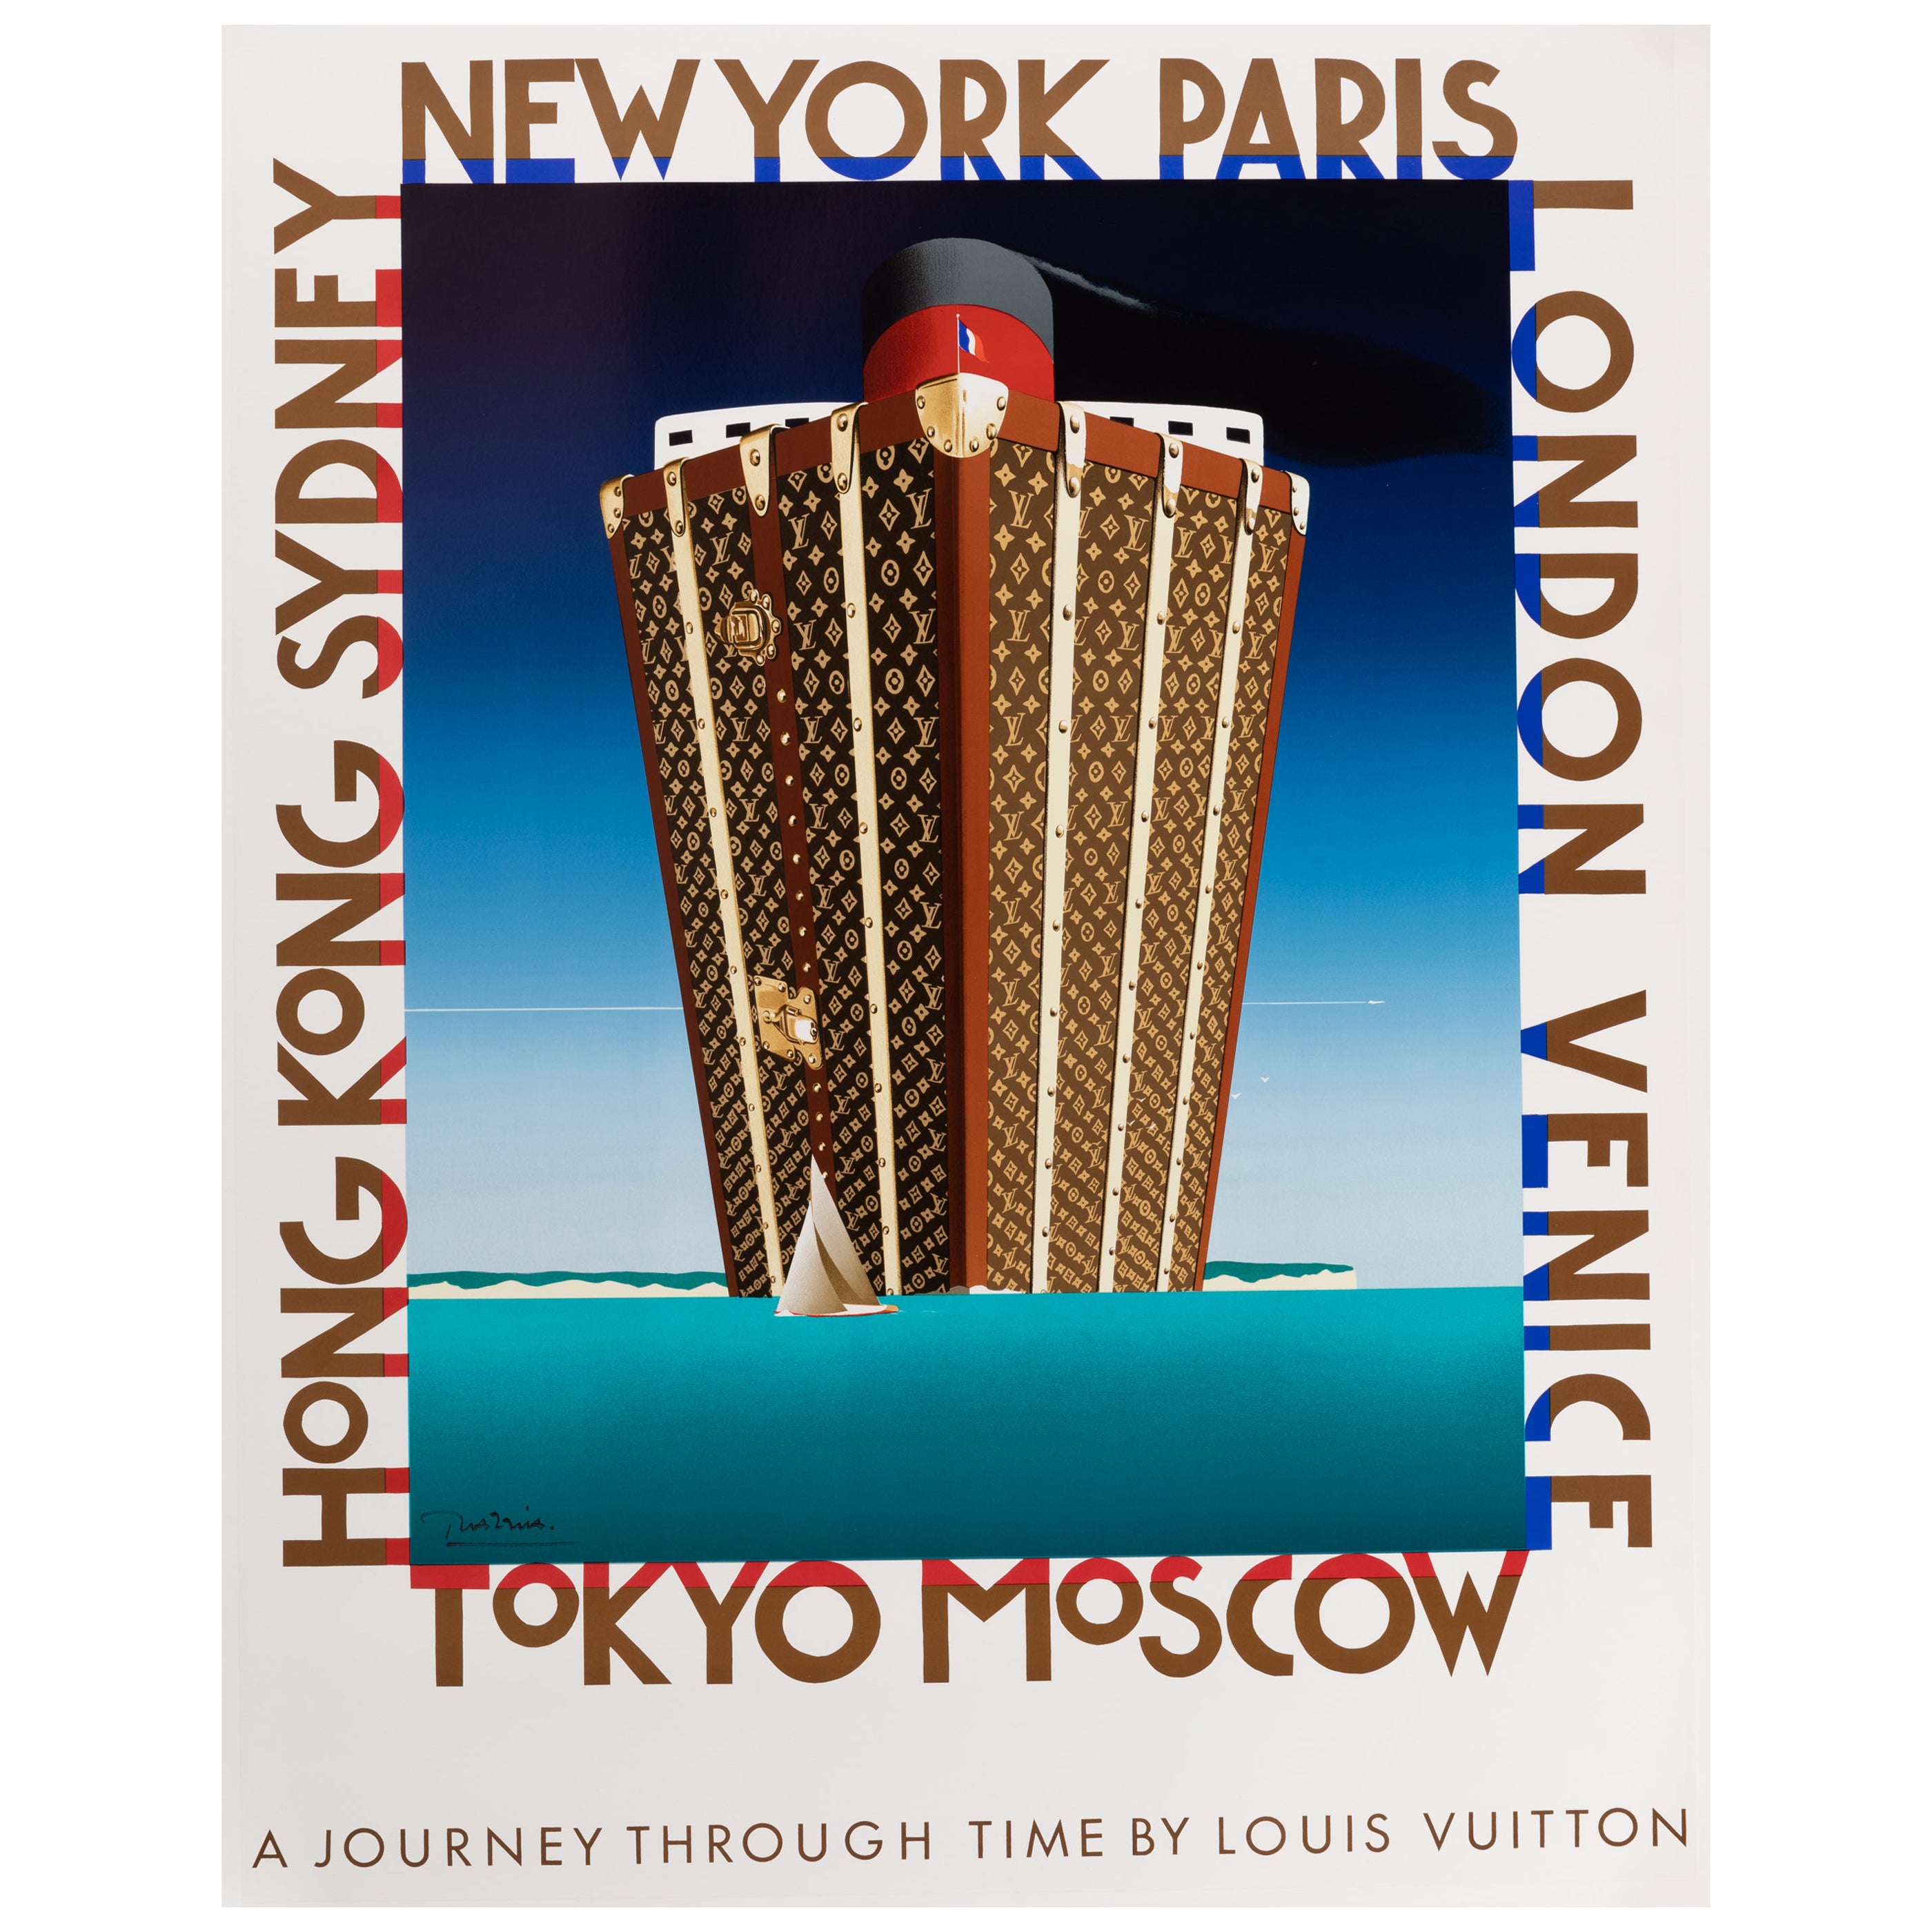 Louis Vuitton Bagatelle Concours d'Elegance 1995 large original event  poster by Razzia